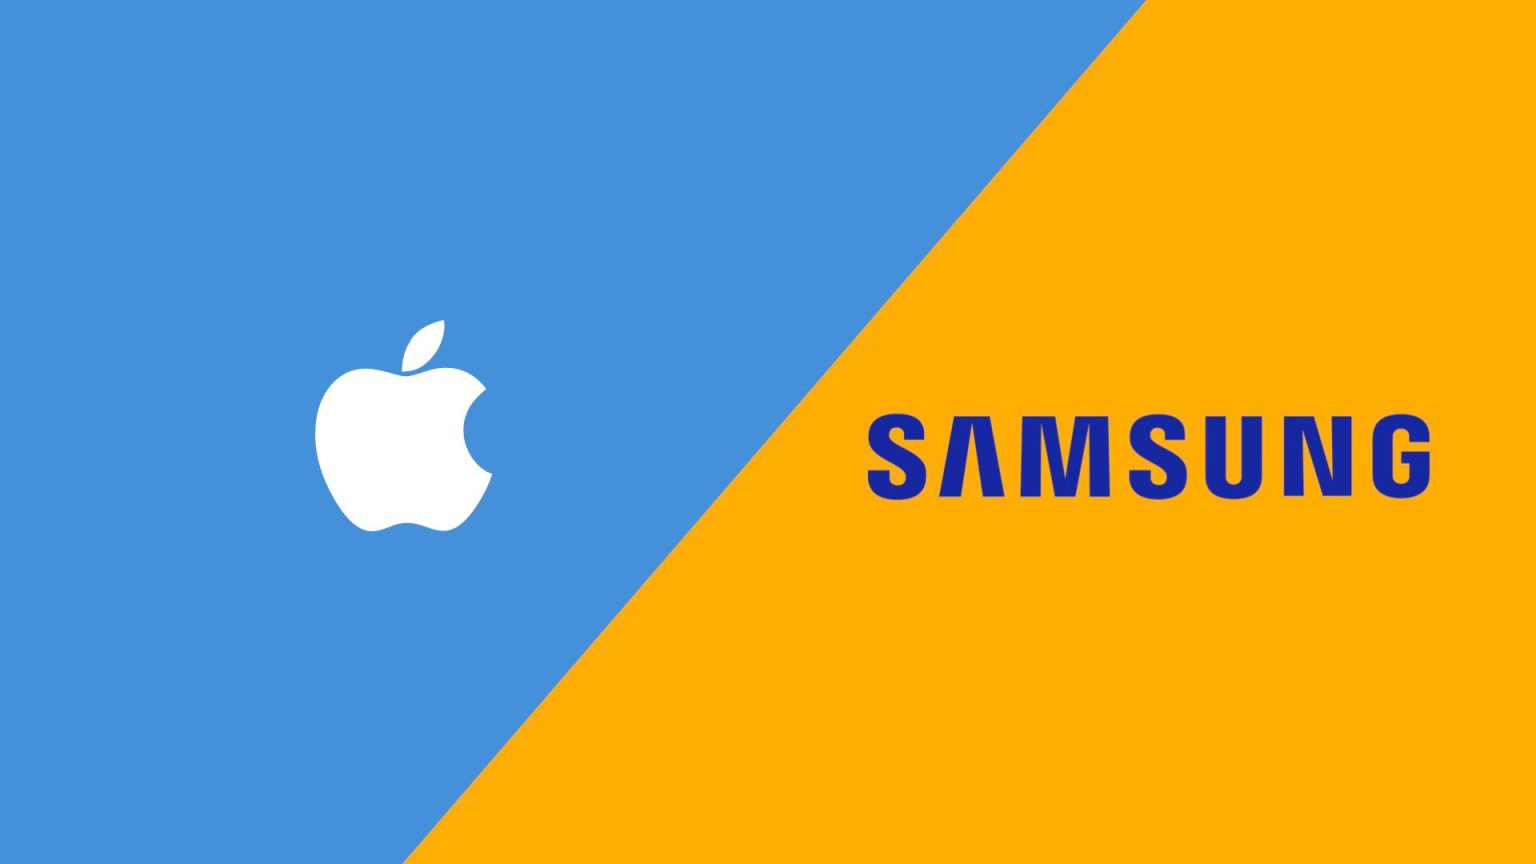 El ACSI Mobile Phones and Wireless Services Study 2020-2021 concluye que los teléfonos Samsung son más satisfactorios que los terminales de Apple.